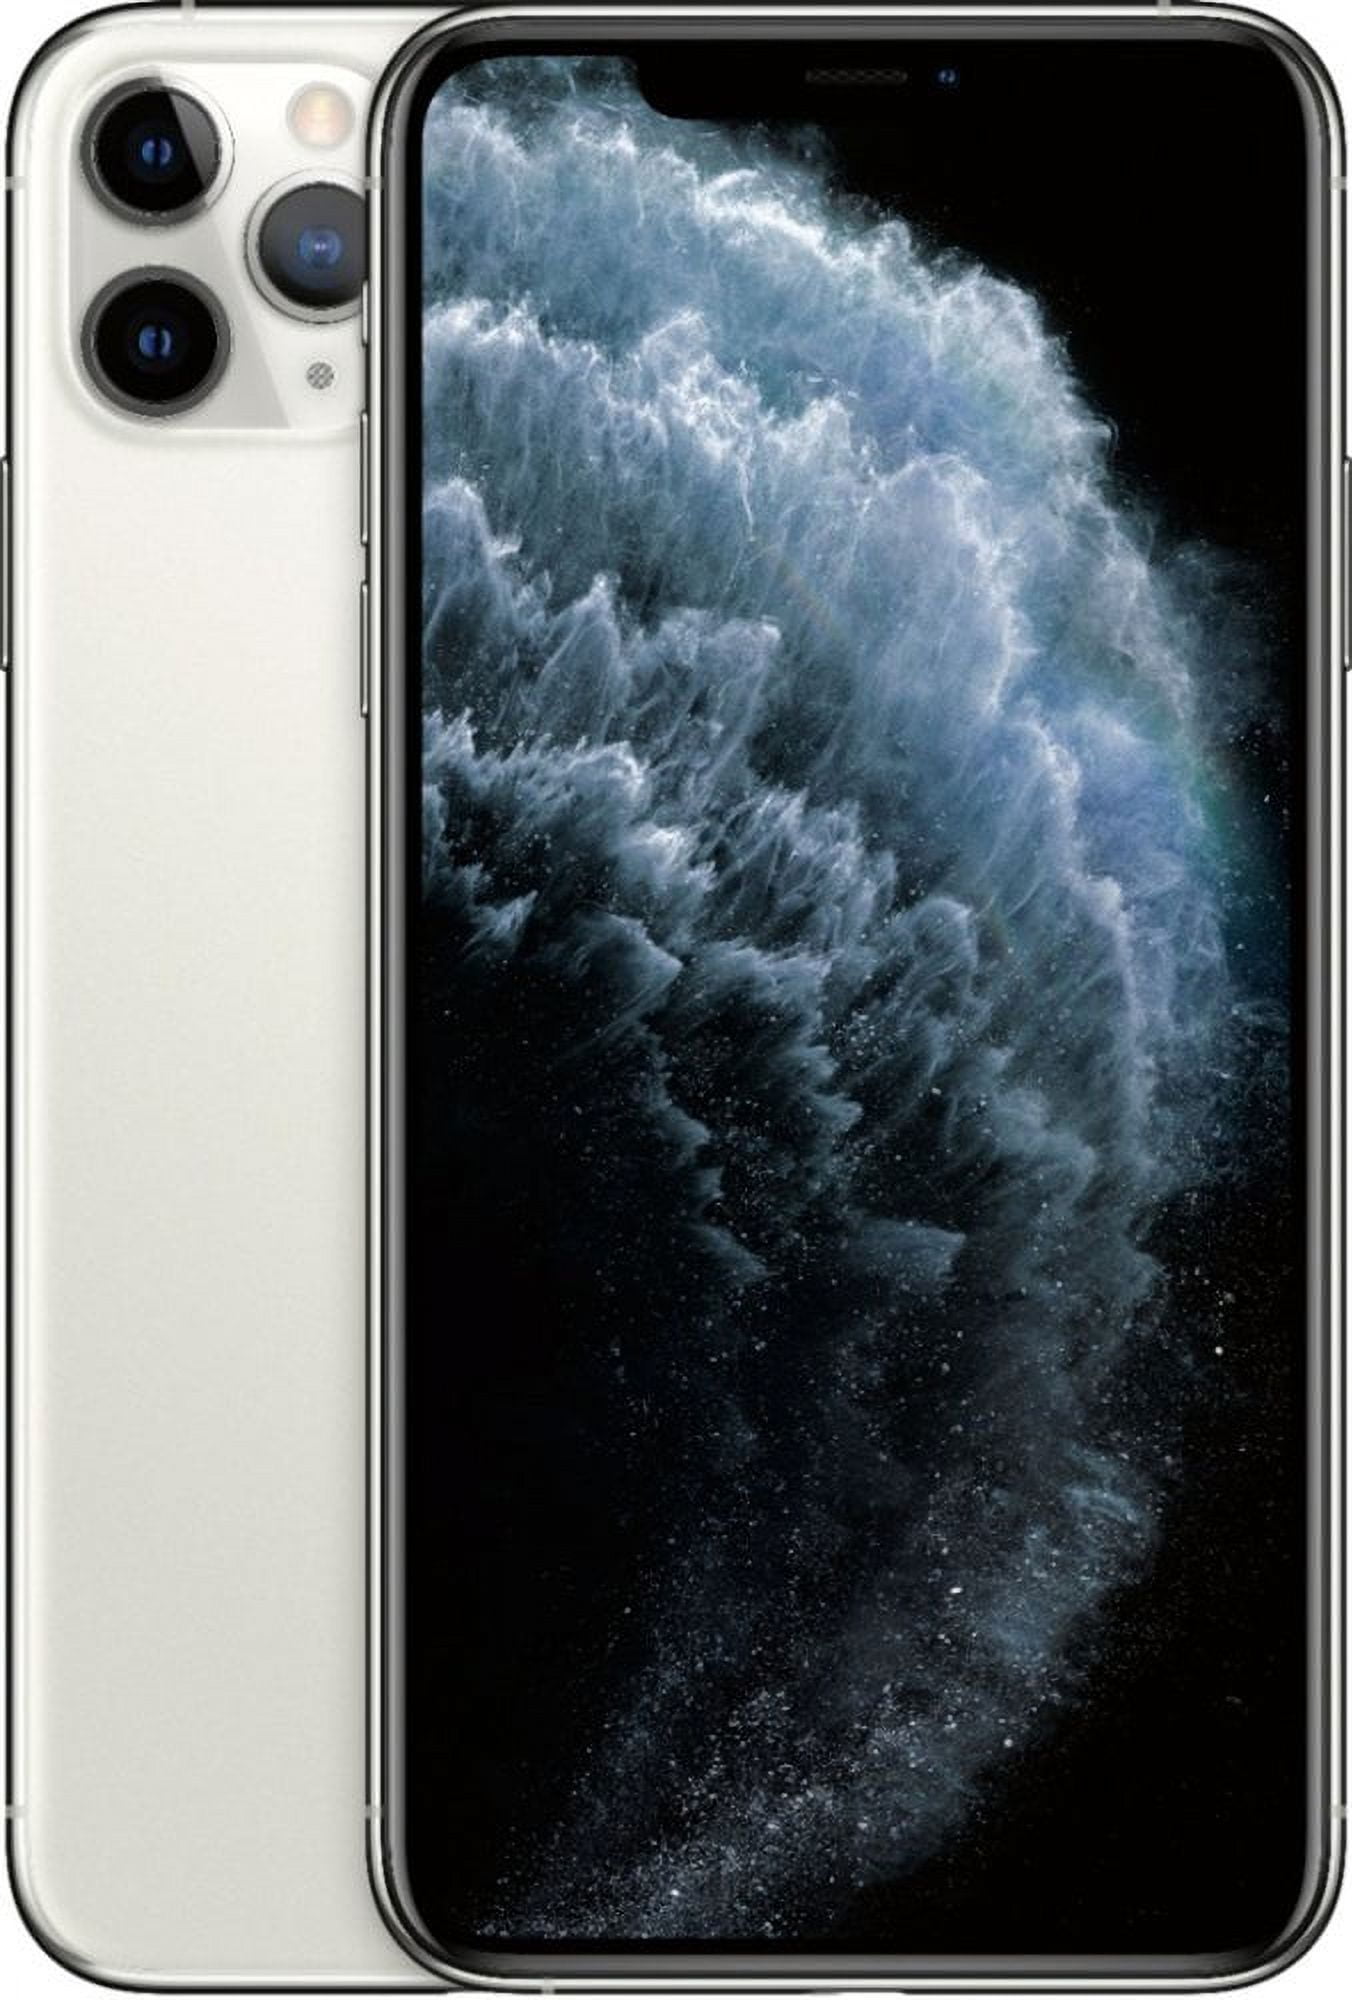 Iphone 11 Pro Max 512 Gb Gris Espacial Reacondicionado - Grado Excelente (  A+ ) + Garantía 2 Años + Funda Gratis con Ofertas en Carrefour